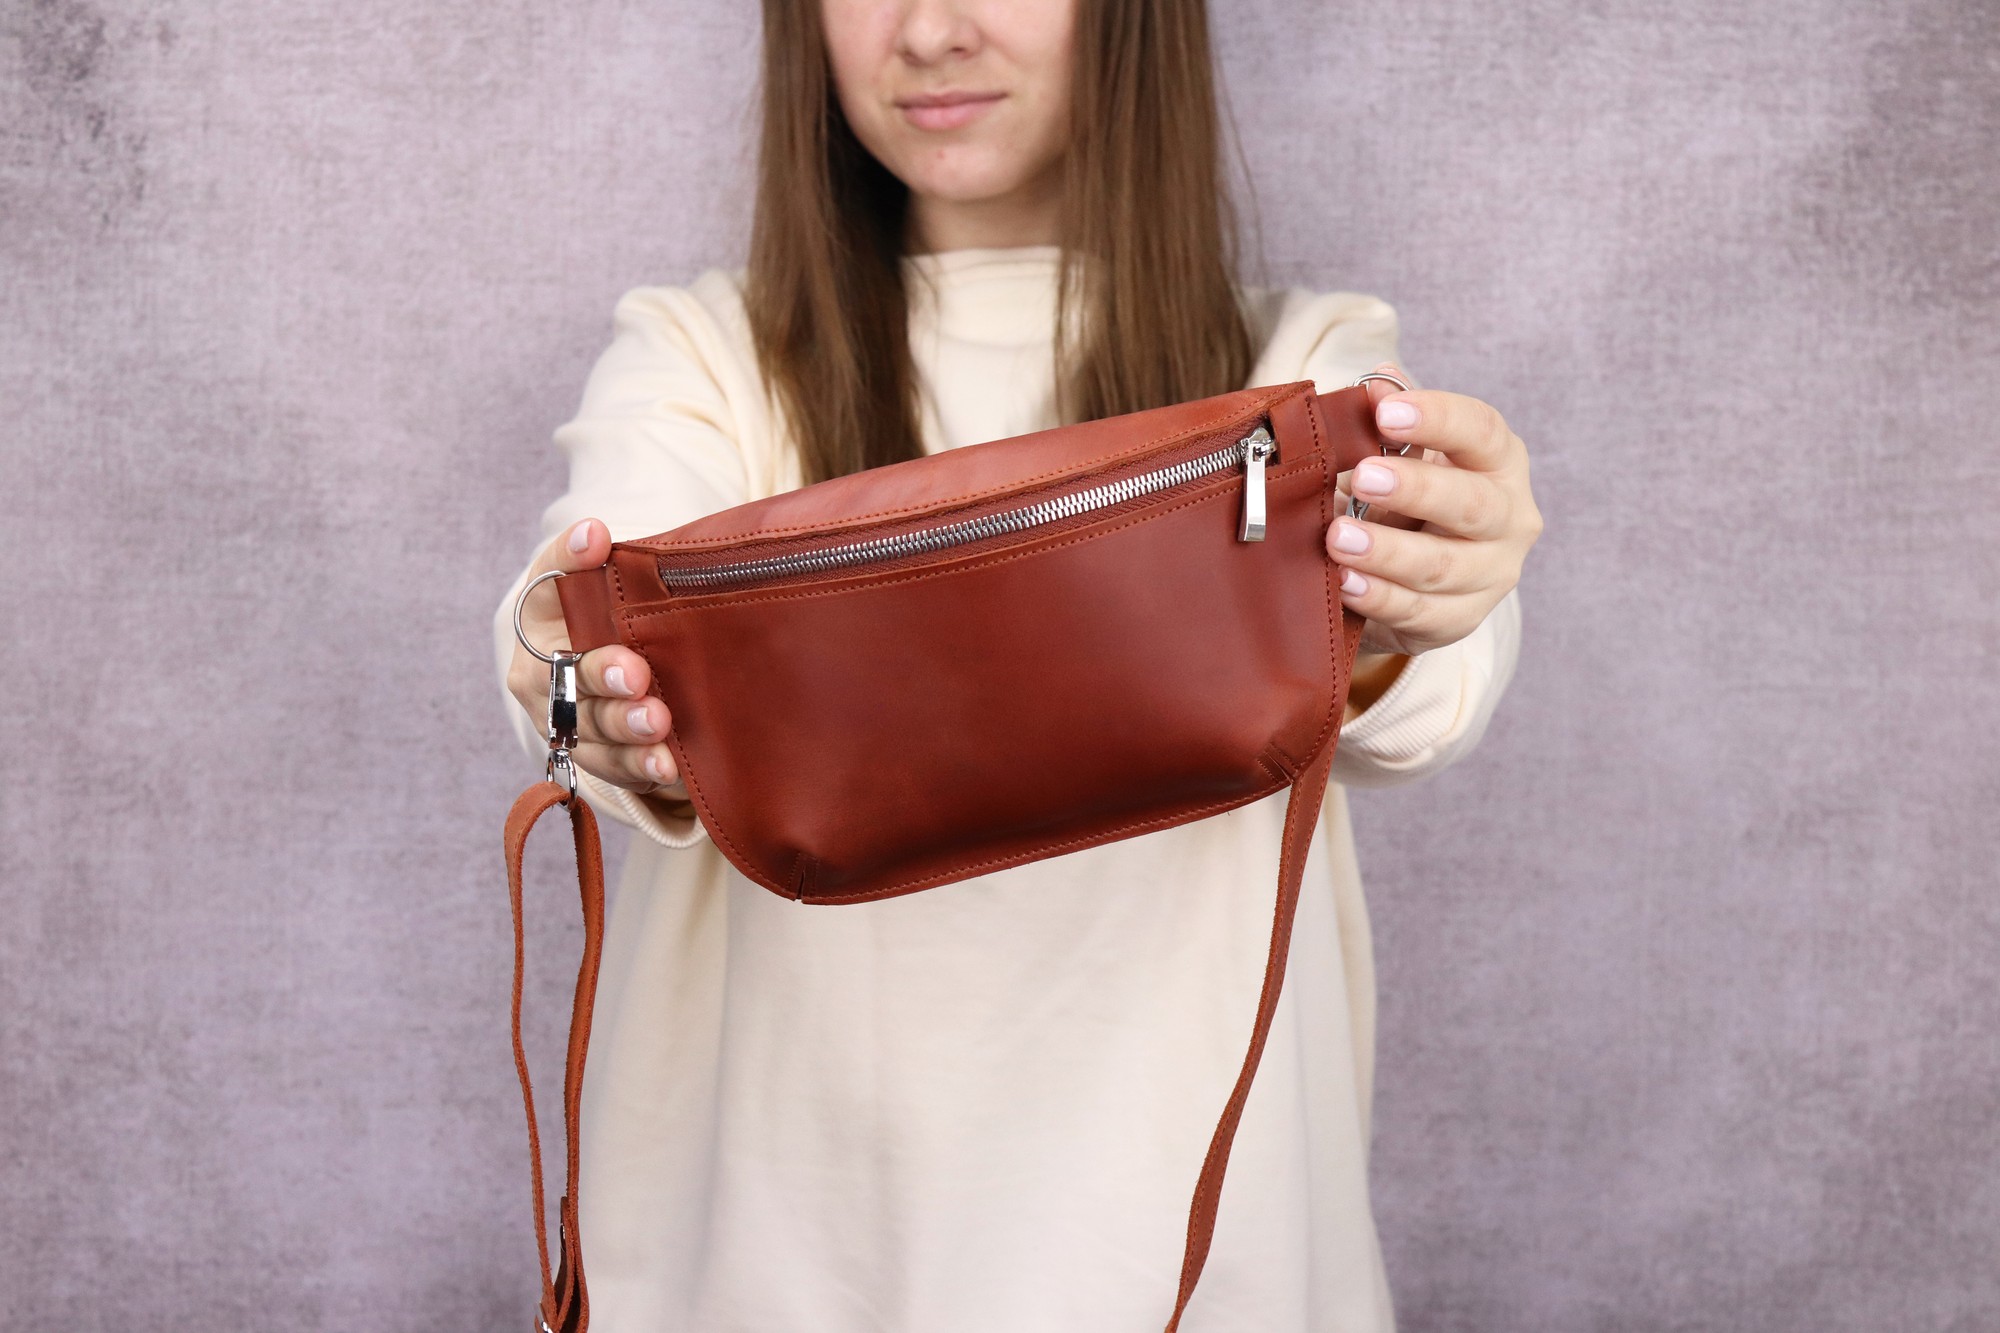 Handmade leather shoulder bag, waist bag, banana bag / Brown - 1027-S